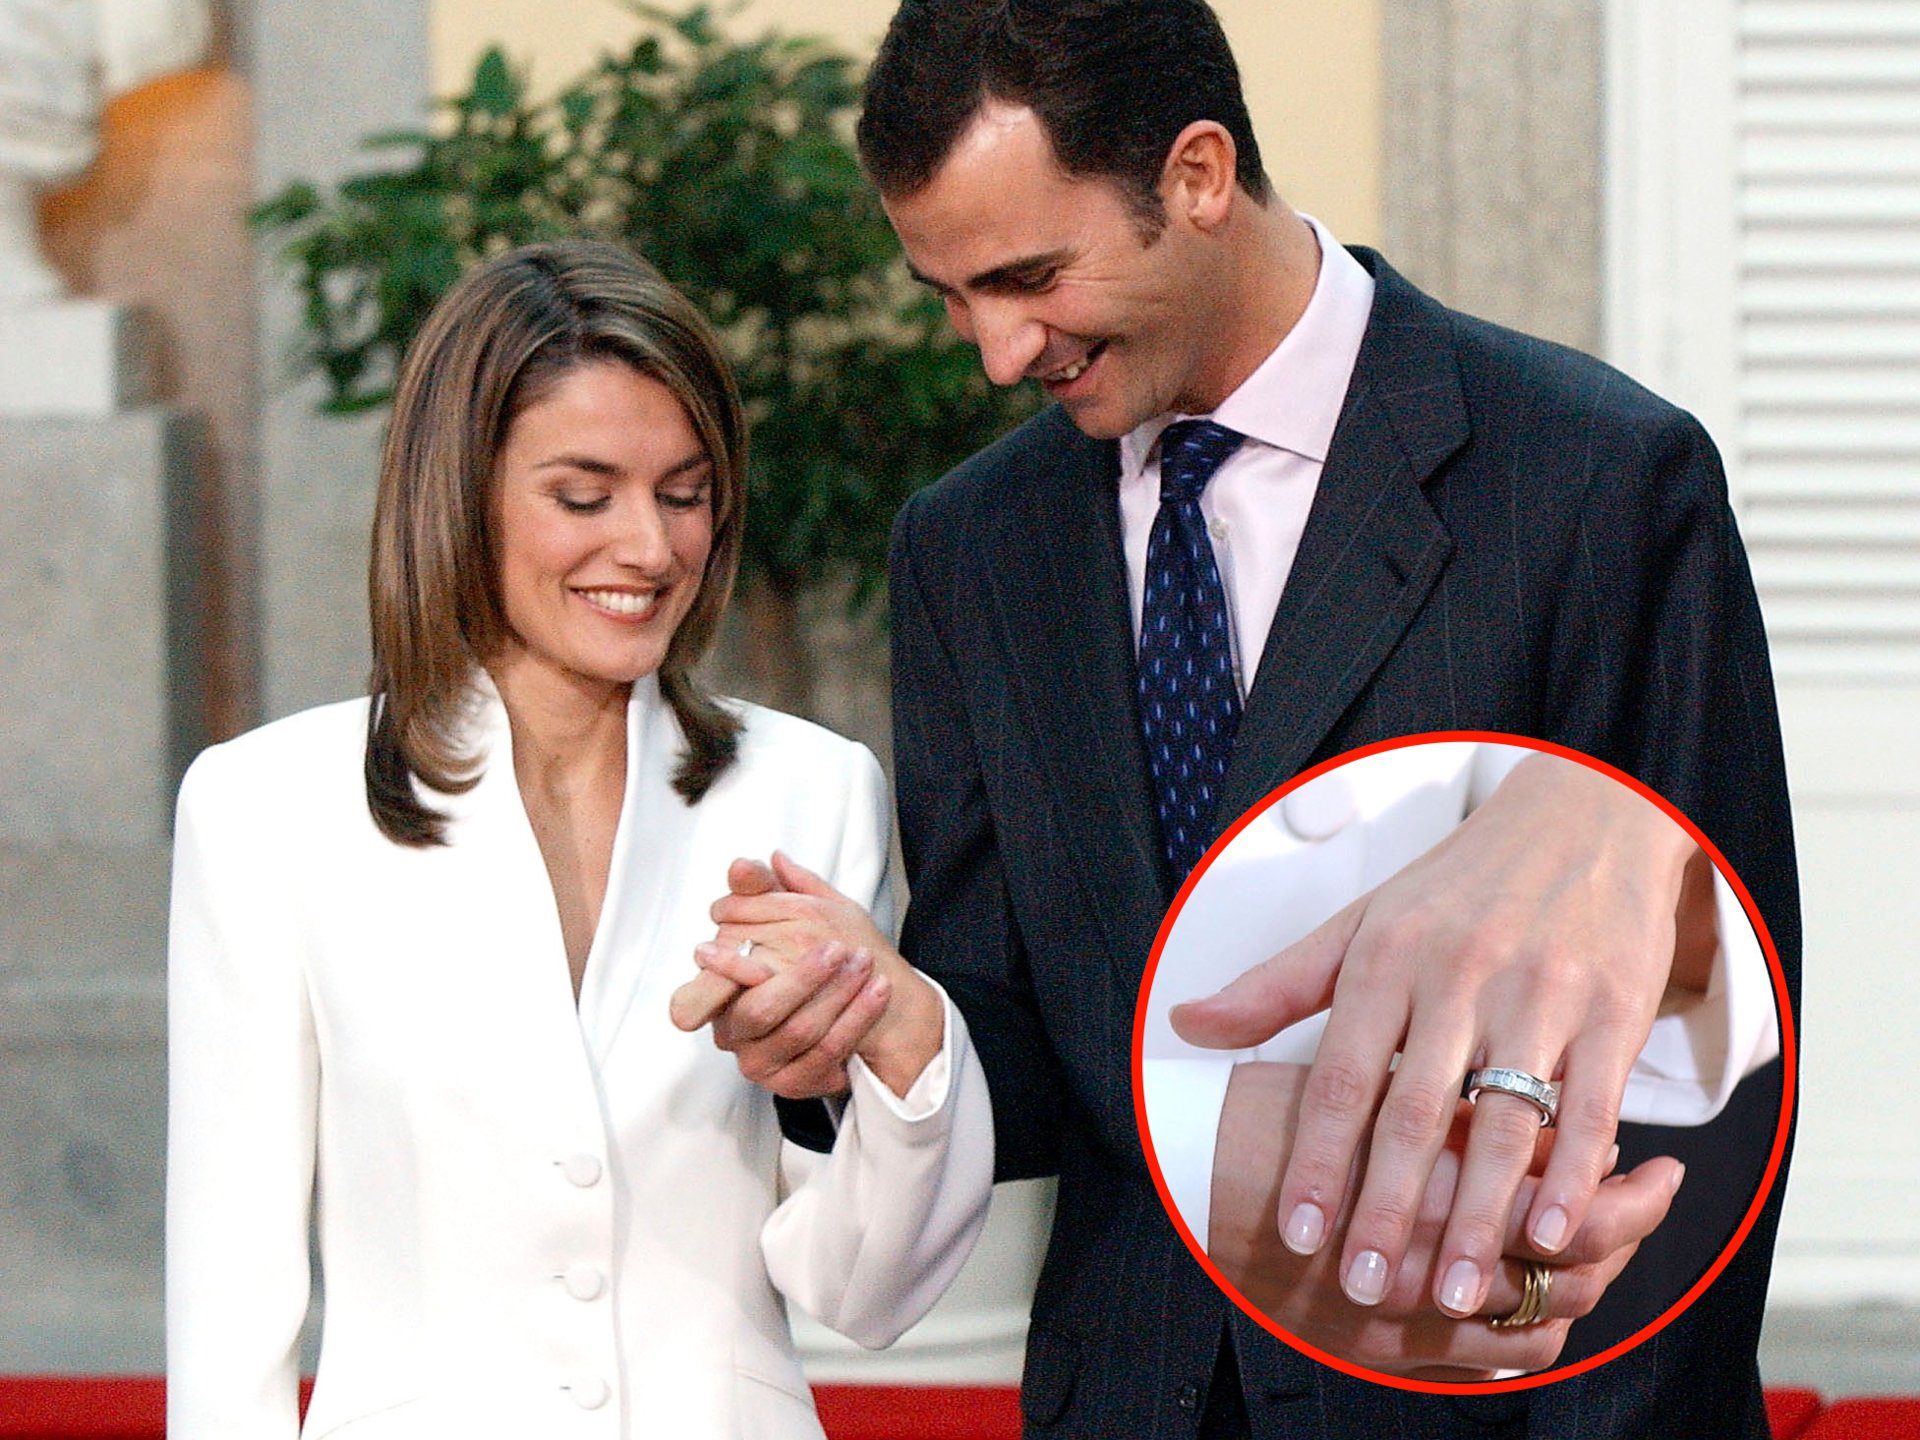   Thái tử Tây Ban Nha Felipe và Công nương trong lễ đính hôn năm 2003 - Nguồn: The Daily Mail  